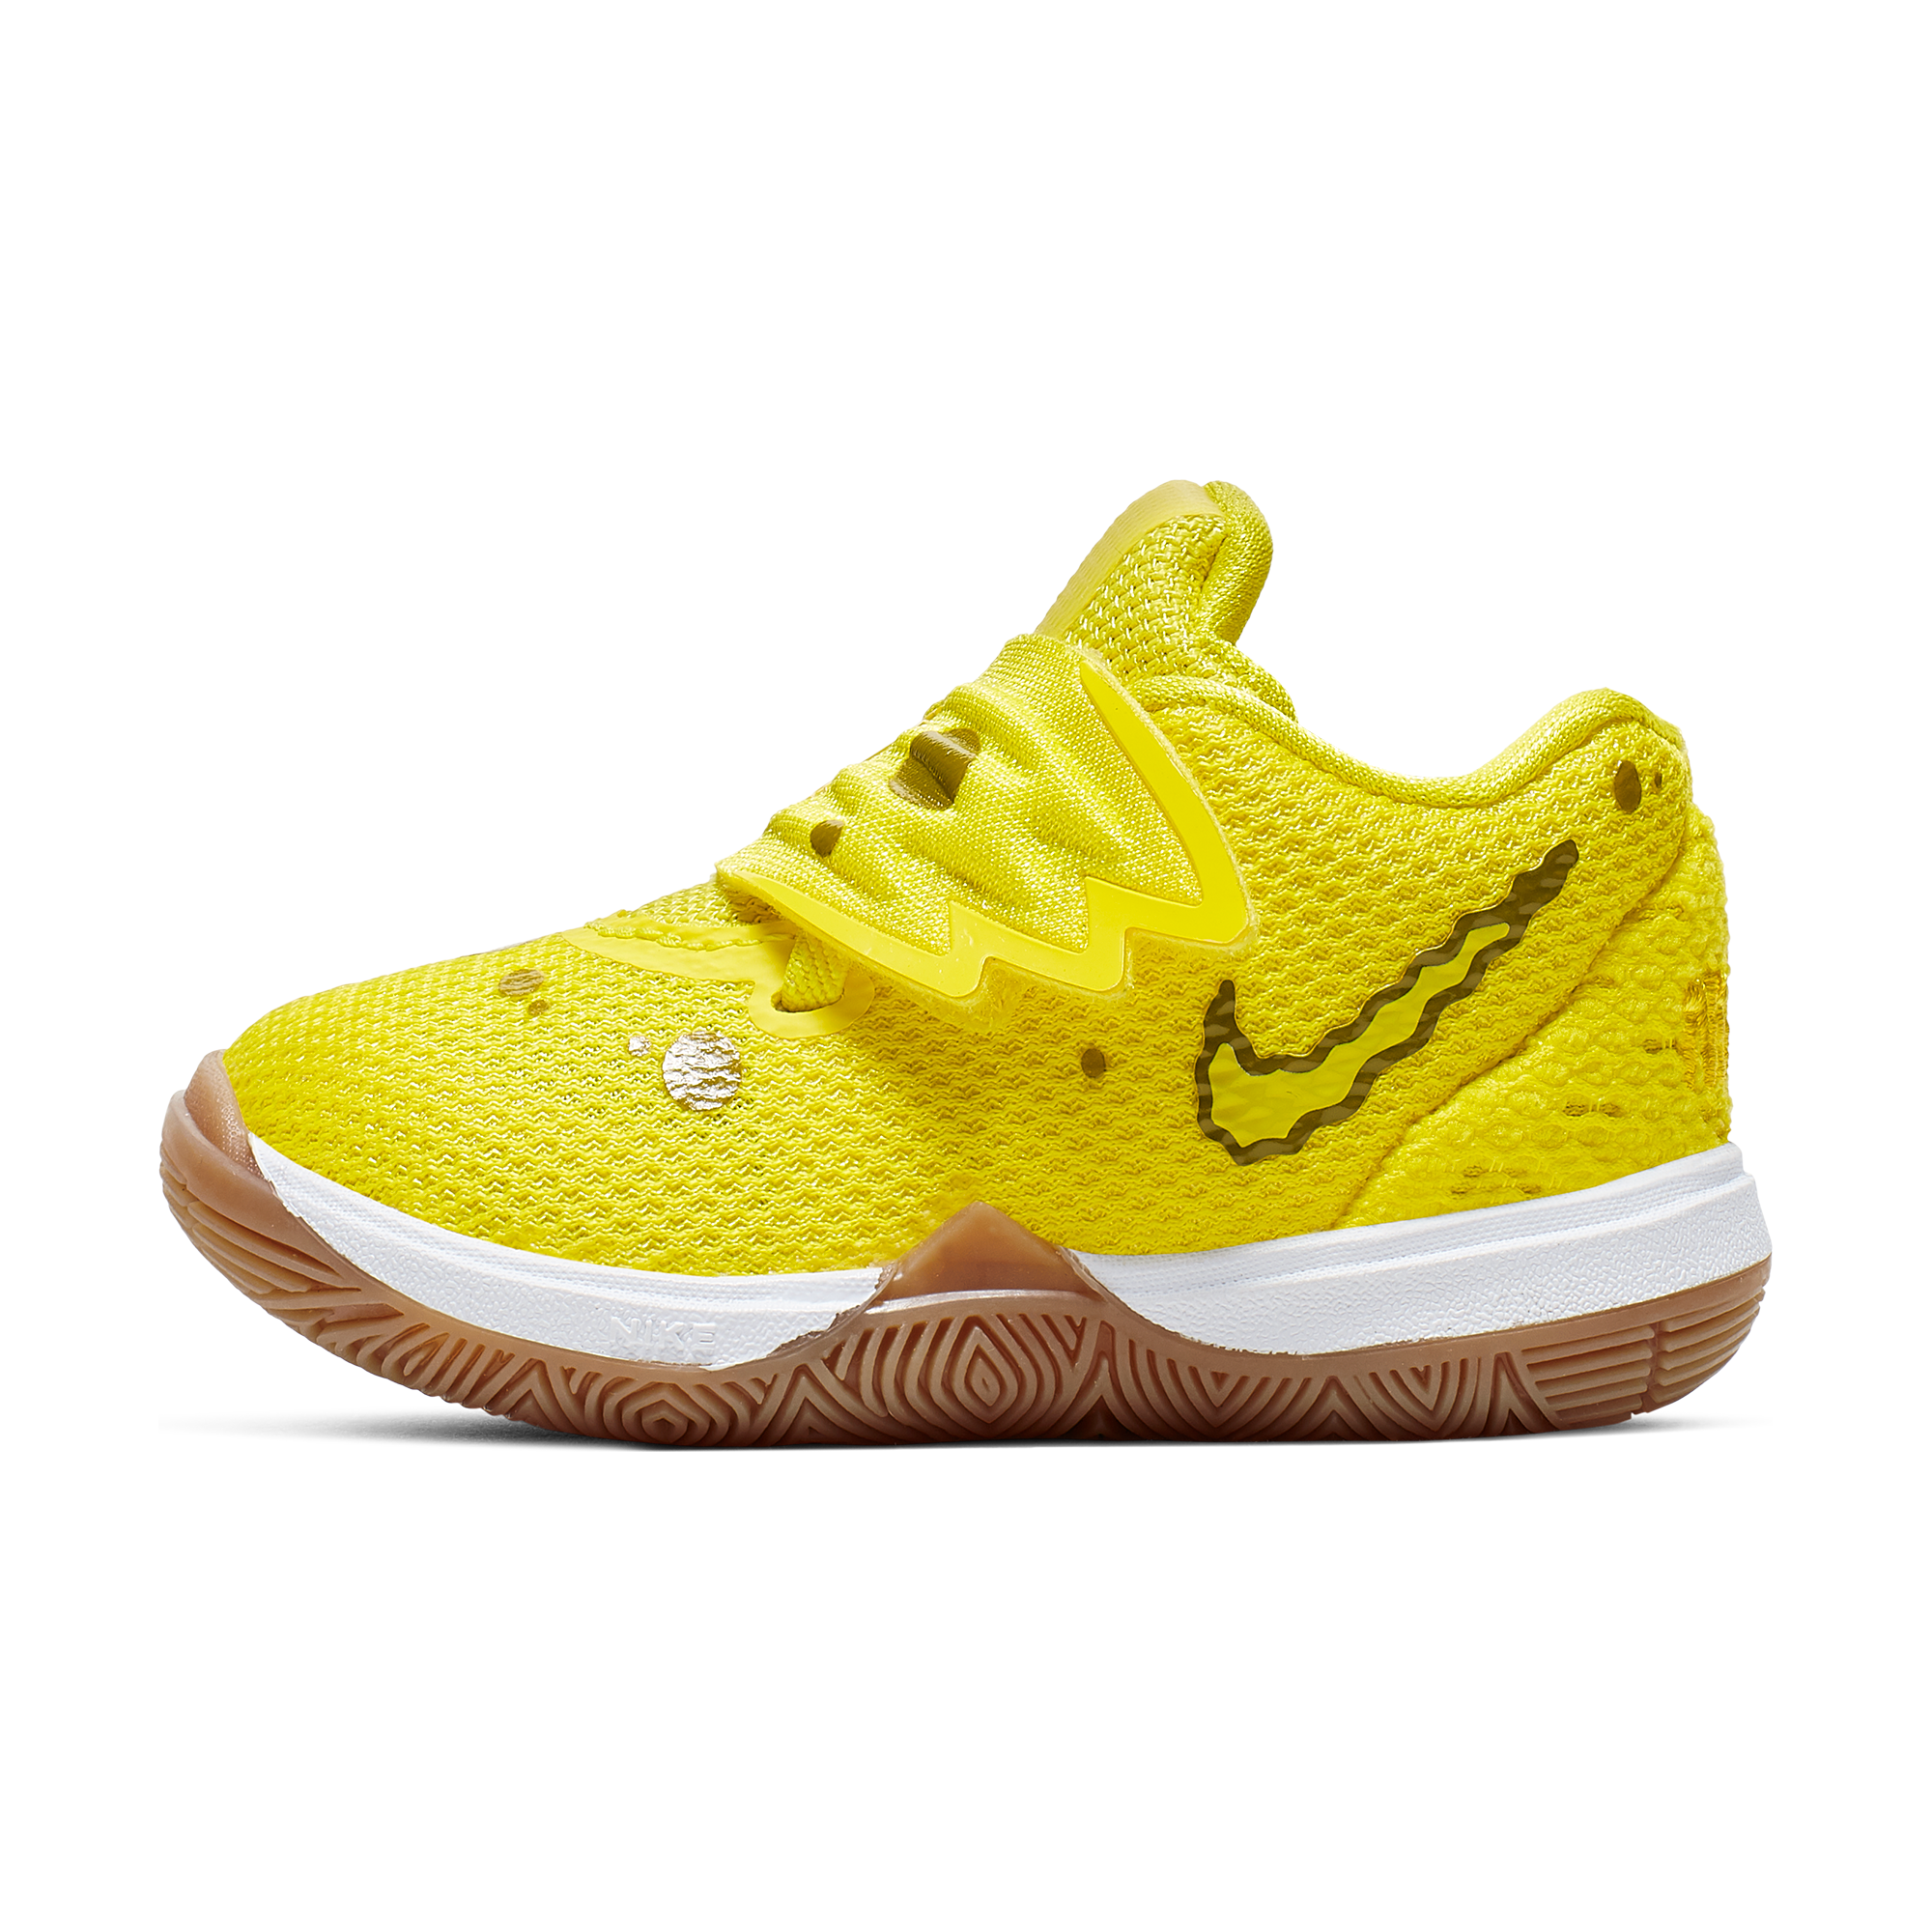 Nike Kyrie 5 X Bape AO2919 200 Basketball shoes kyrie